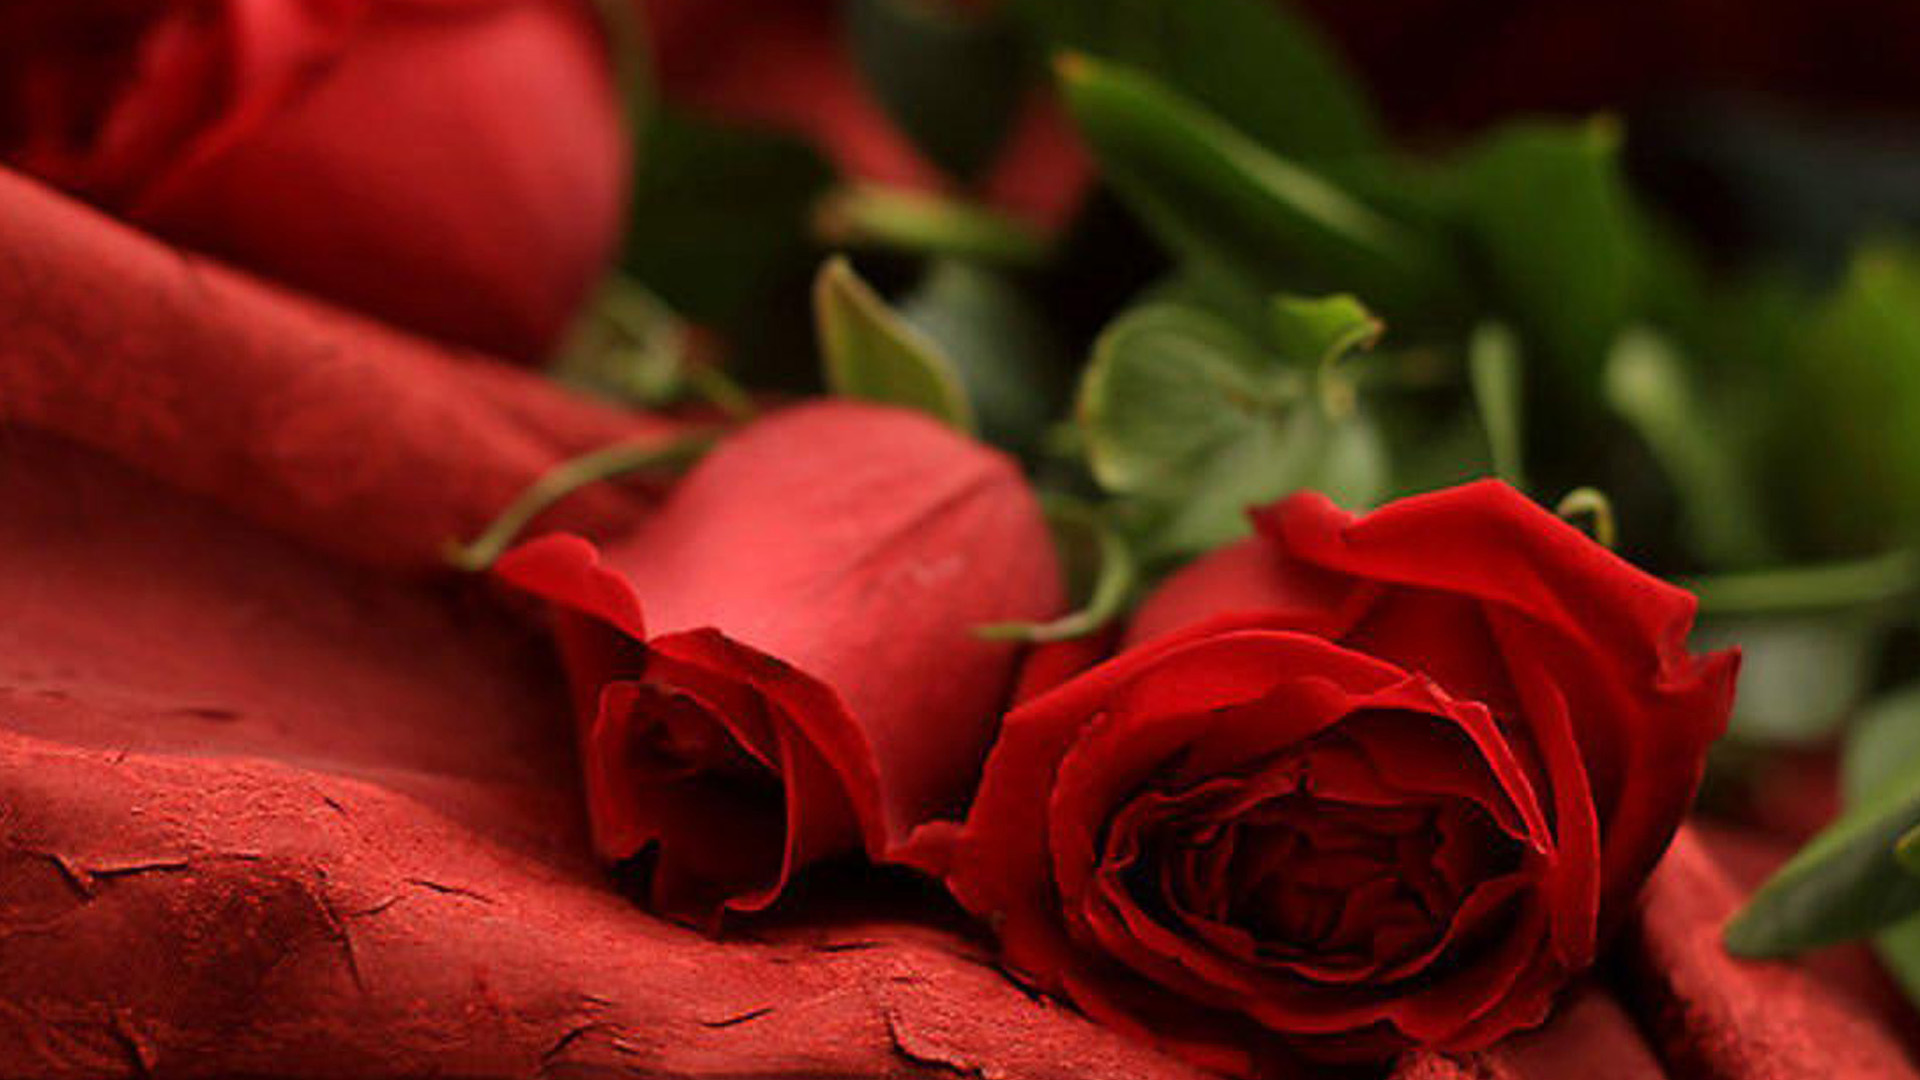 Romantic Rose Images In Hd - HD Wallpaper 